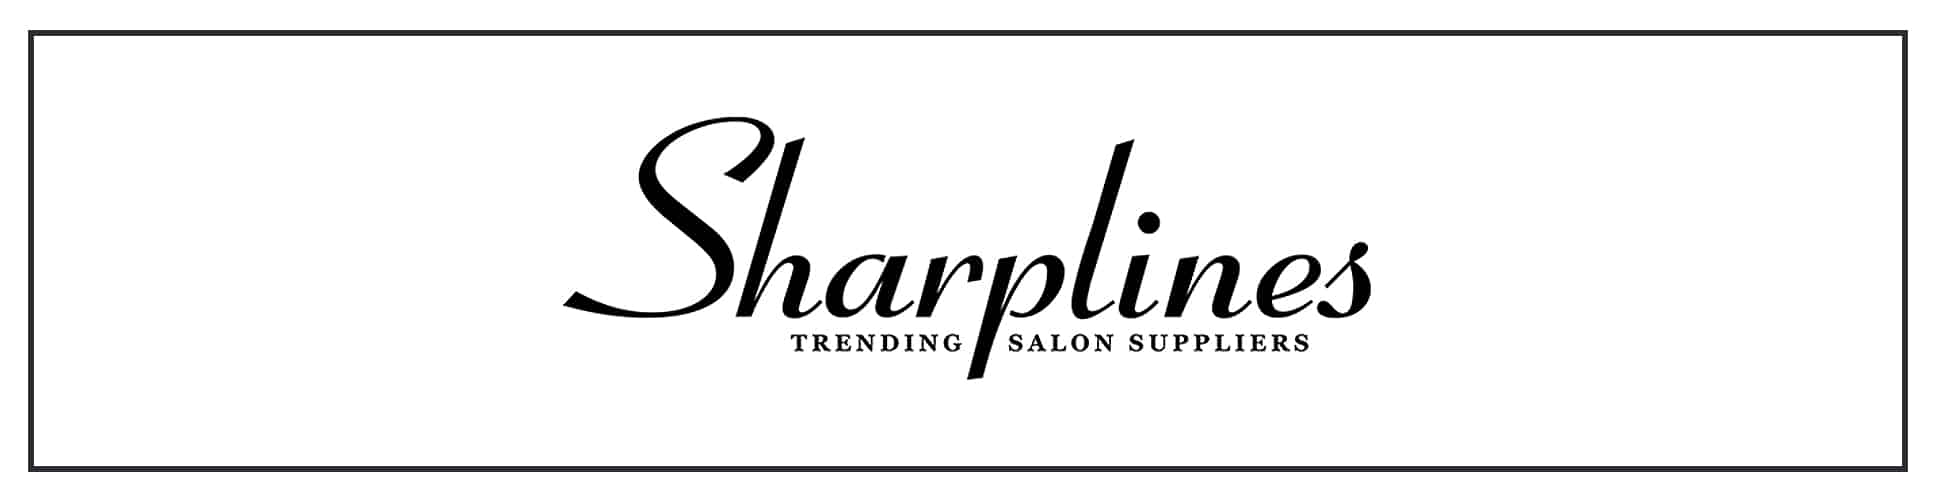 A logo for sharplines trading co ltd.